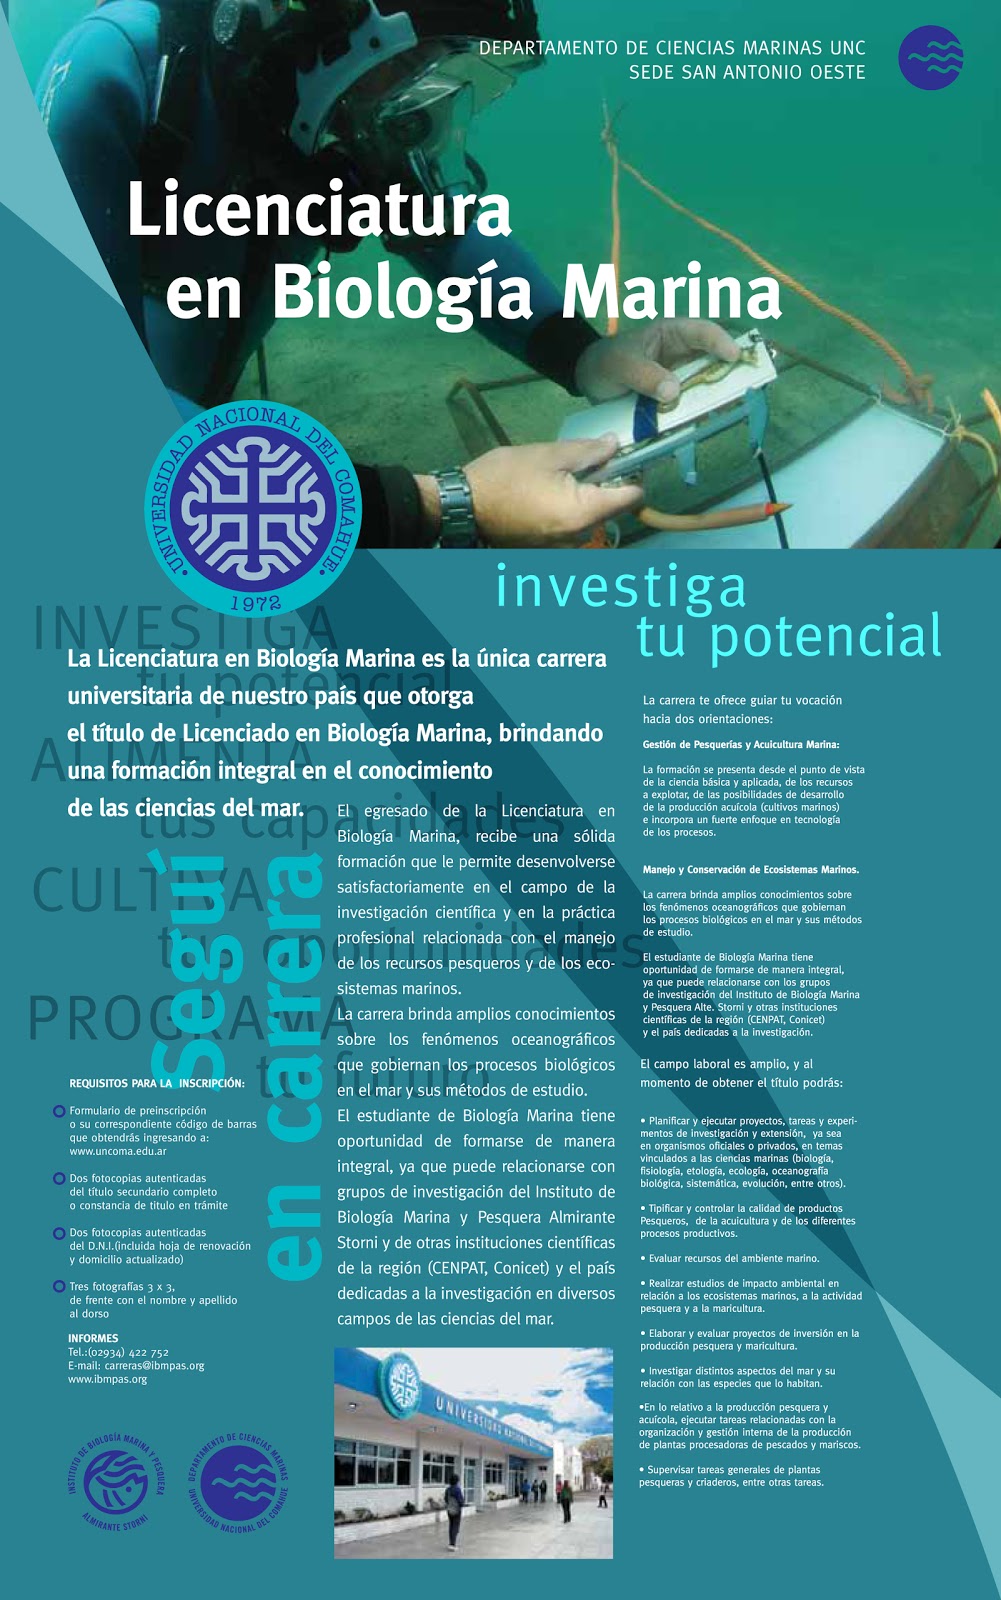 Ciencias Marinas en San Antonio Oeste, Argentina: La Licenciatura en Biología  Marina, única carrera de su tipo en Argentina